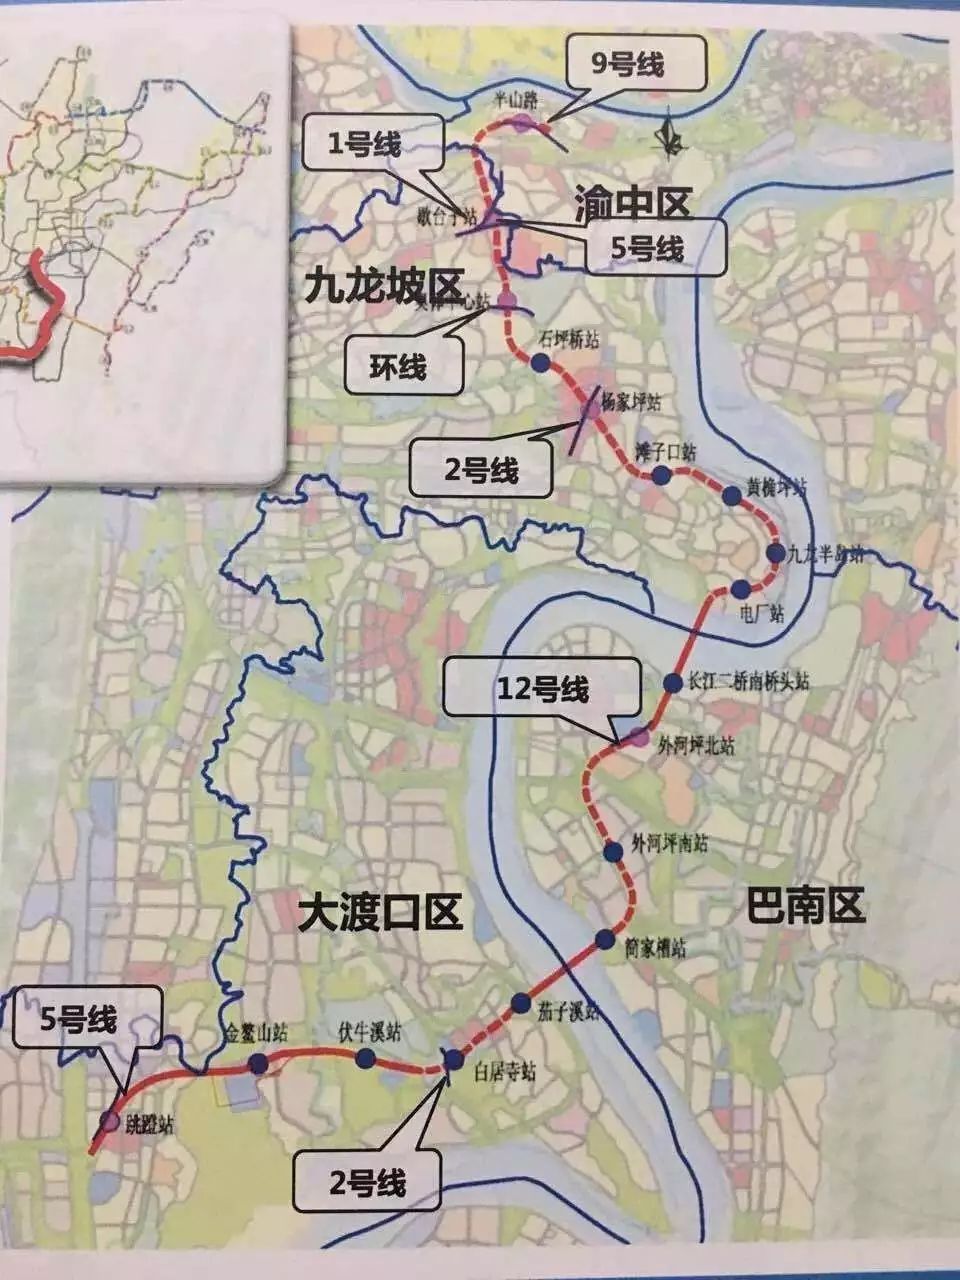 未来巴南这个地方将多一座长江大桥不仅通车还通轻轨